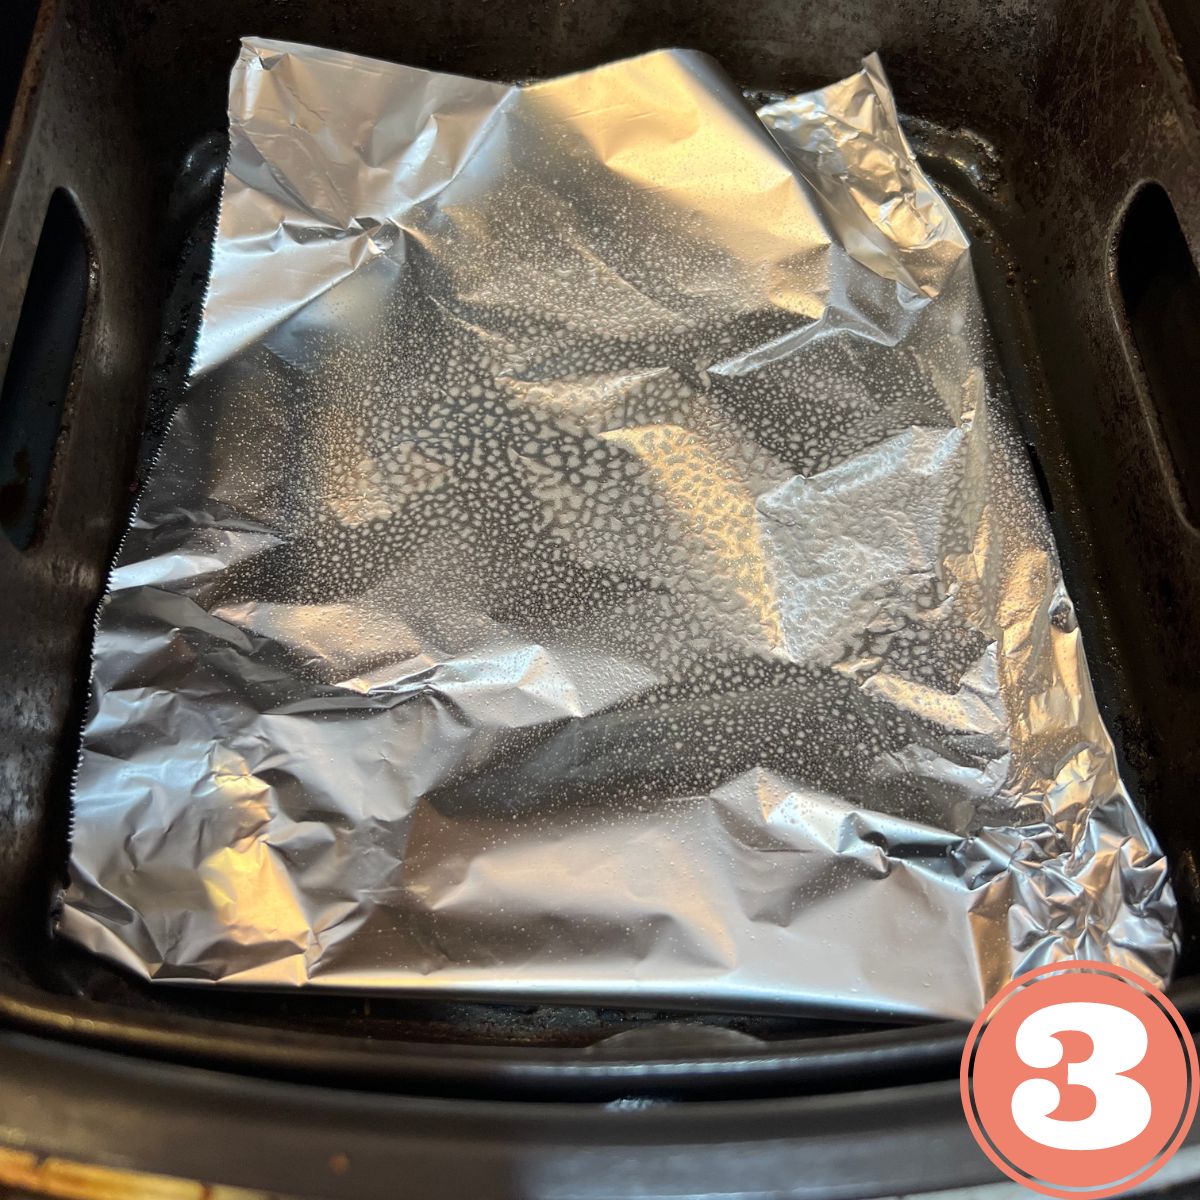 Aluminum foil in an air fryer basket